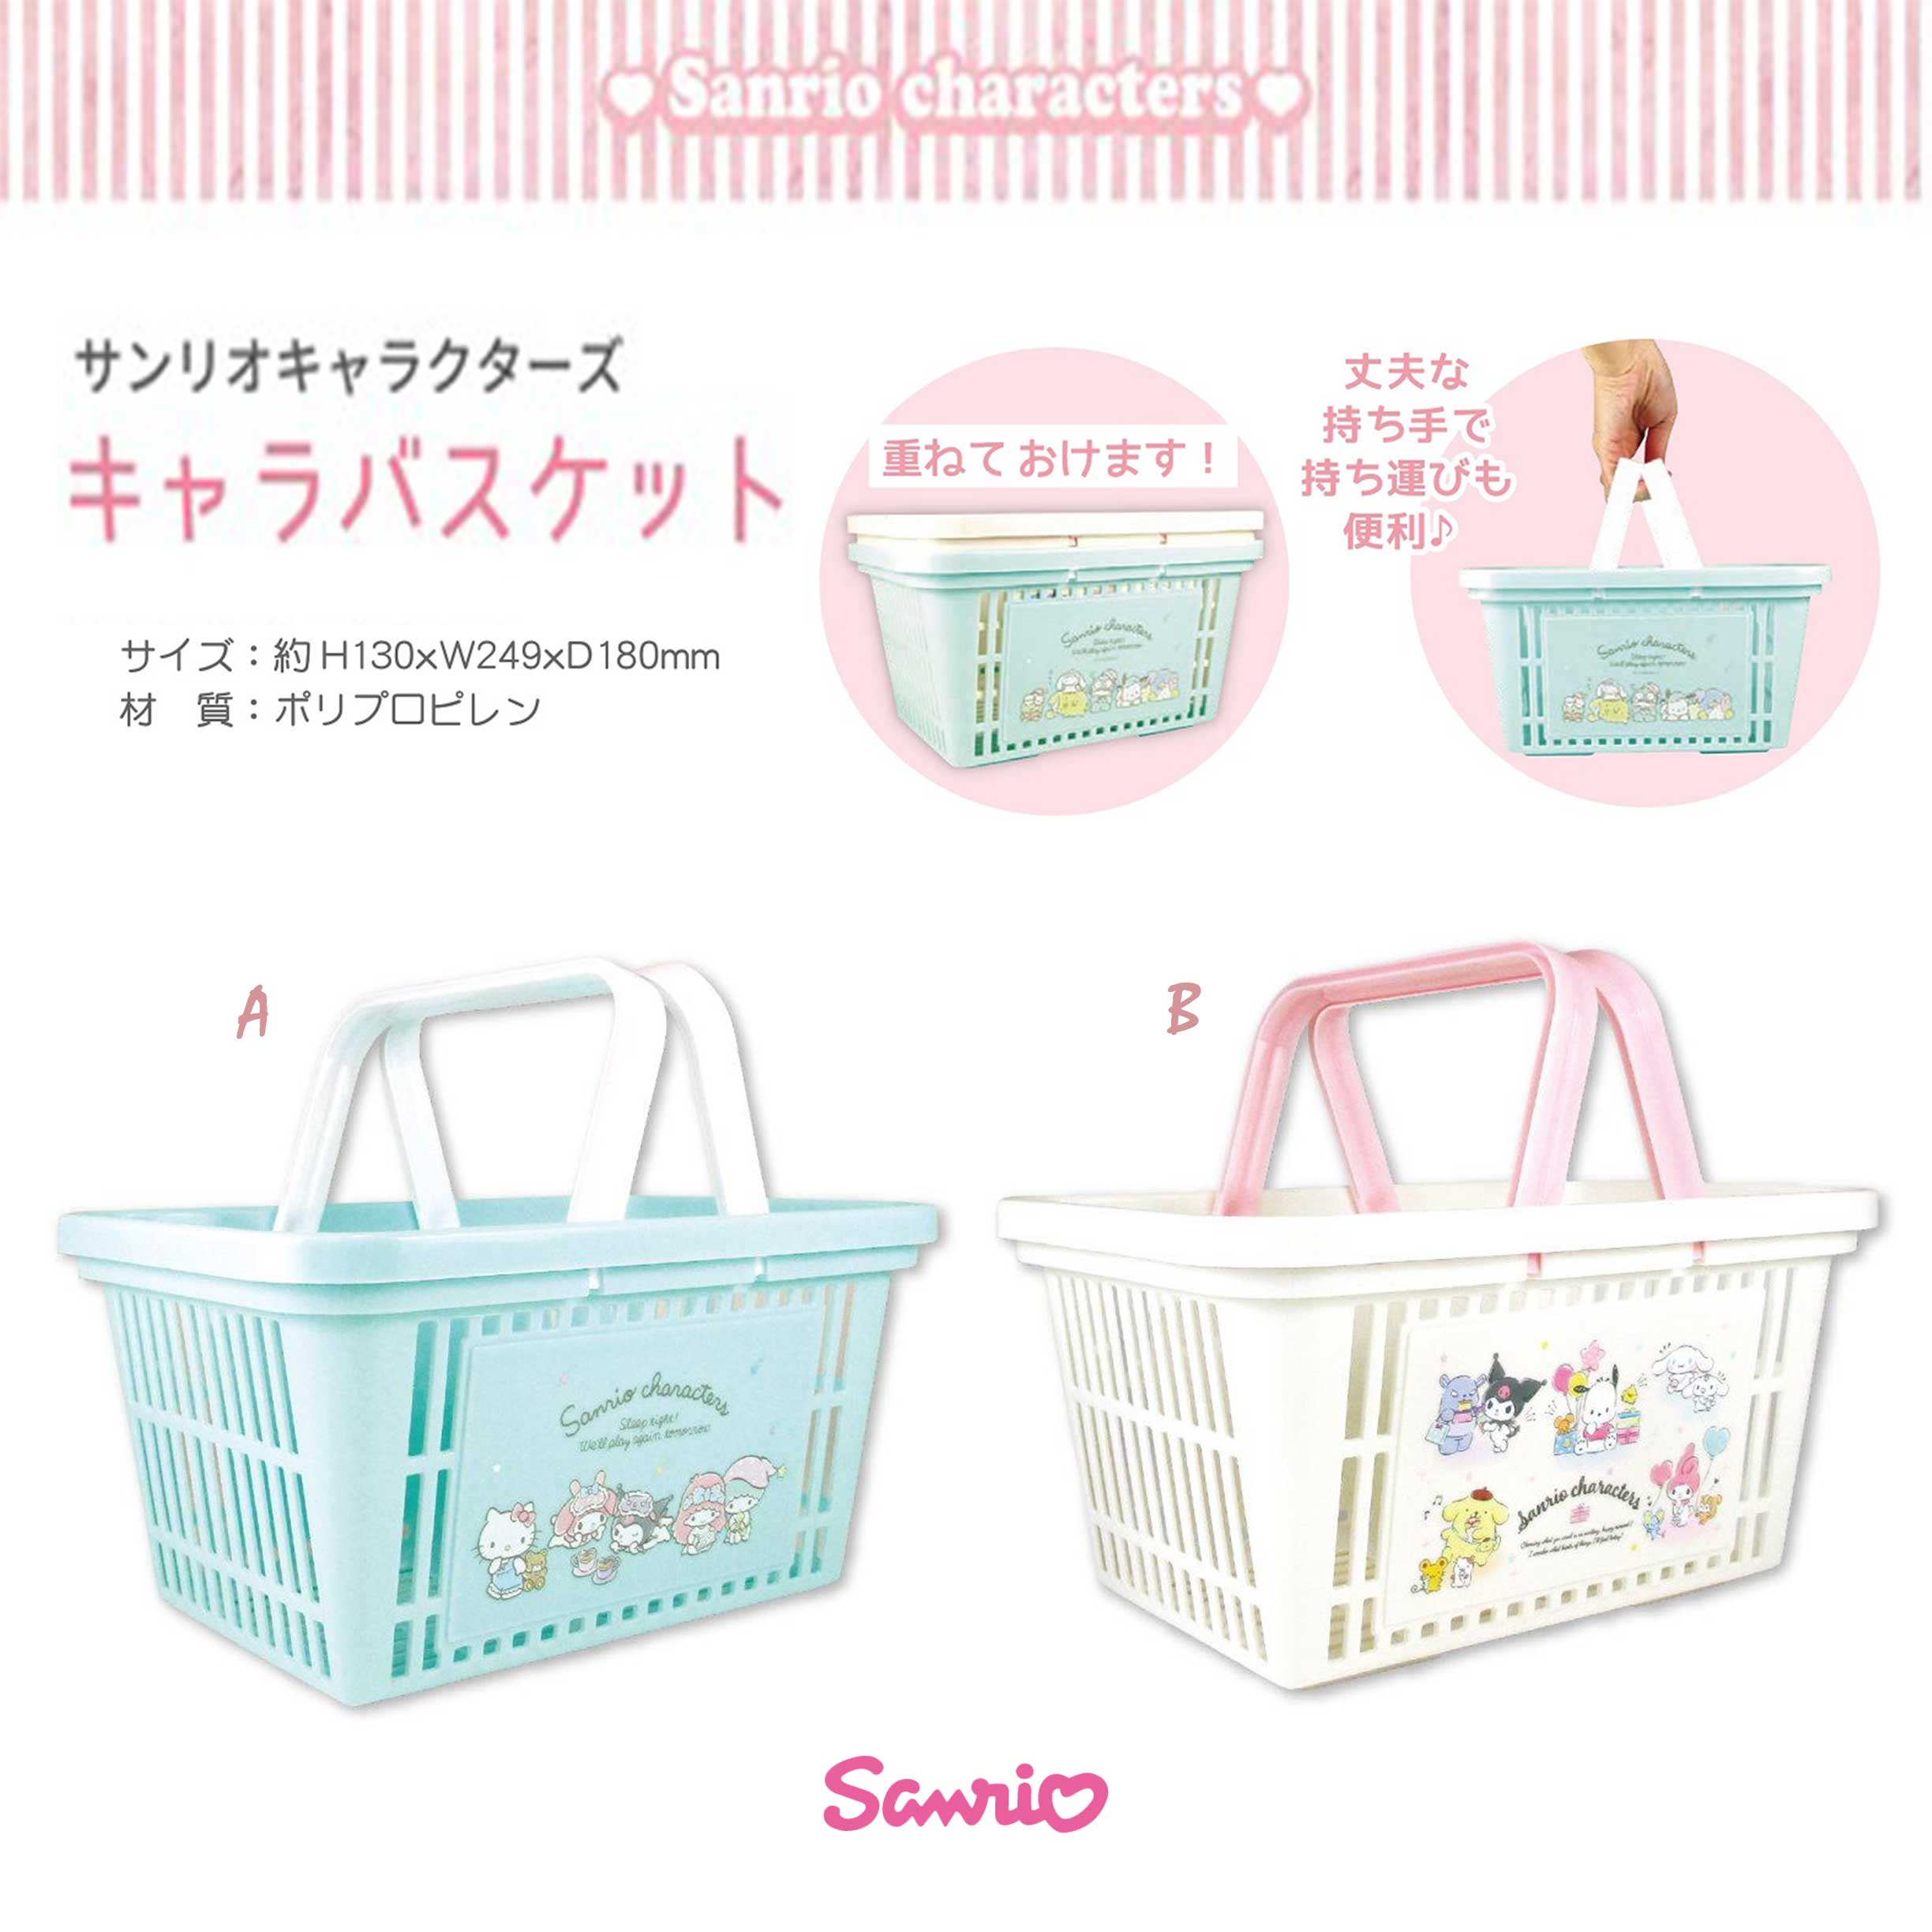 收納提籃-三麗鷗 Sanrio 日本進口正版授權